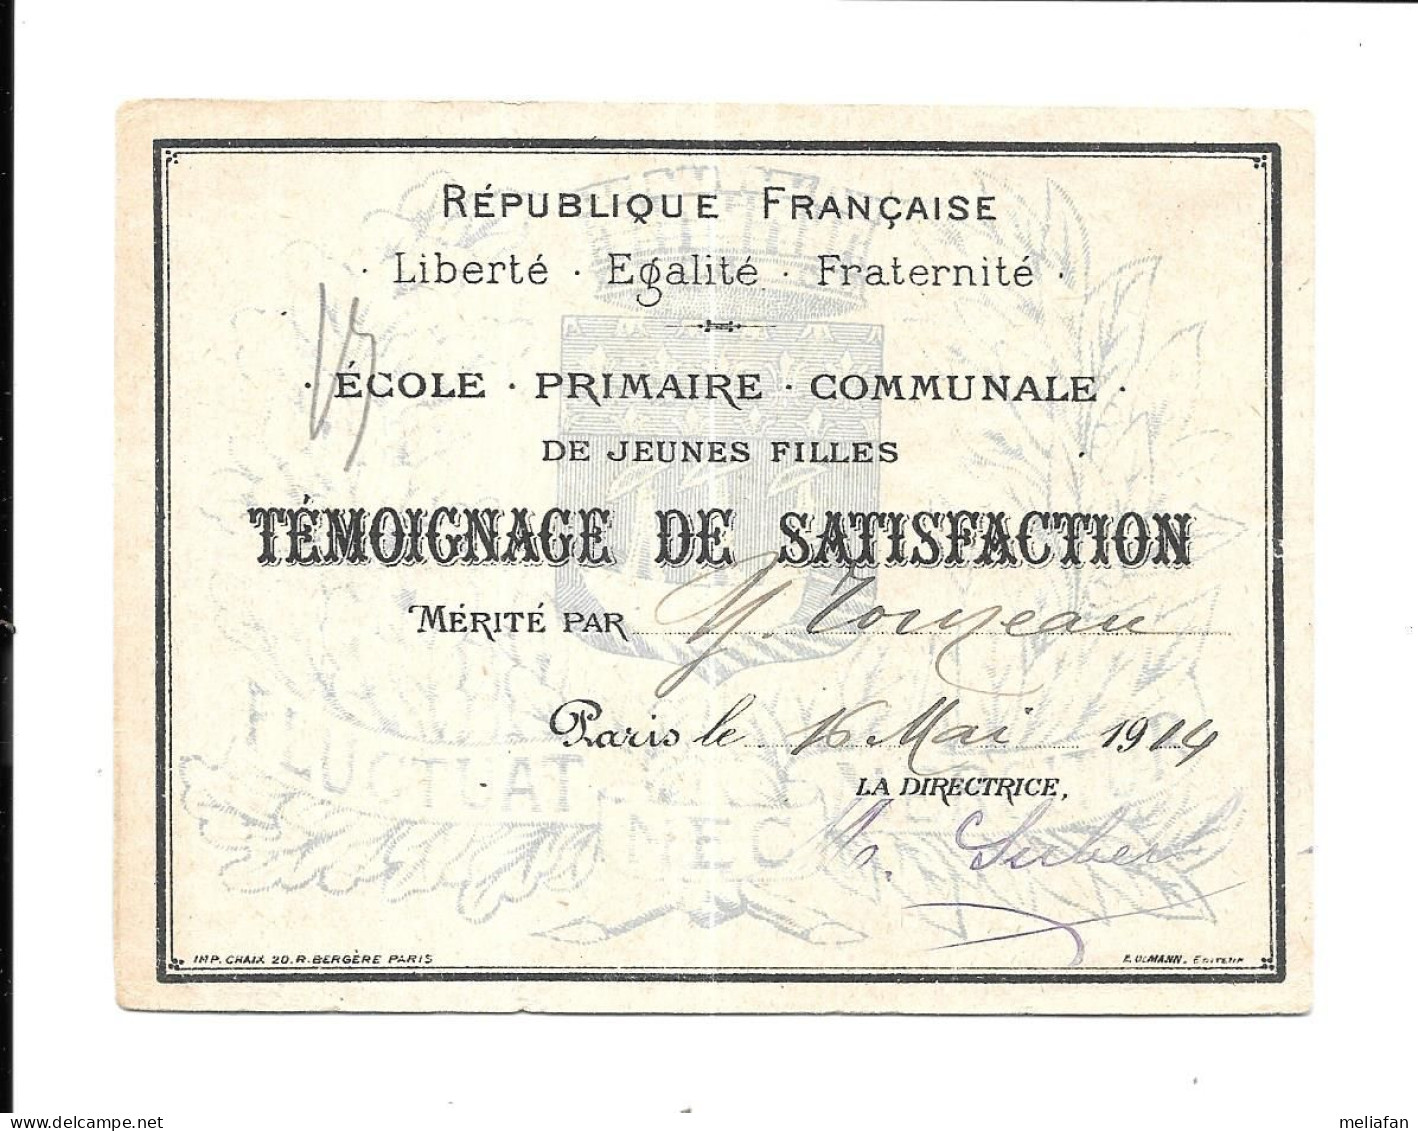 KB2106 - TEMOIGNAGE DE SATISFACTION - ECOLE PRIMAIRE COMMUNALE VILLE DE PARIS 1914 - TOINEAU - Diplômes & Bulletins Scolaires